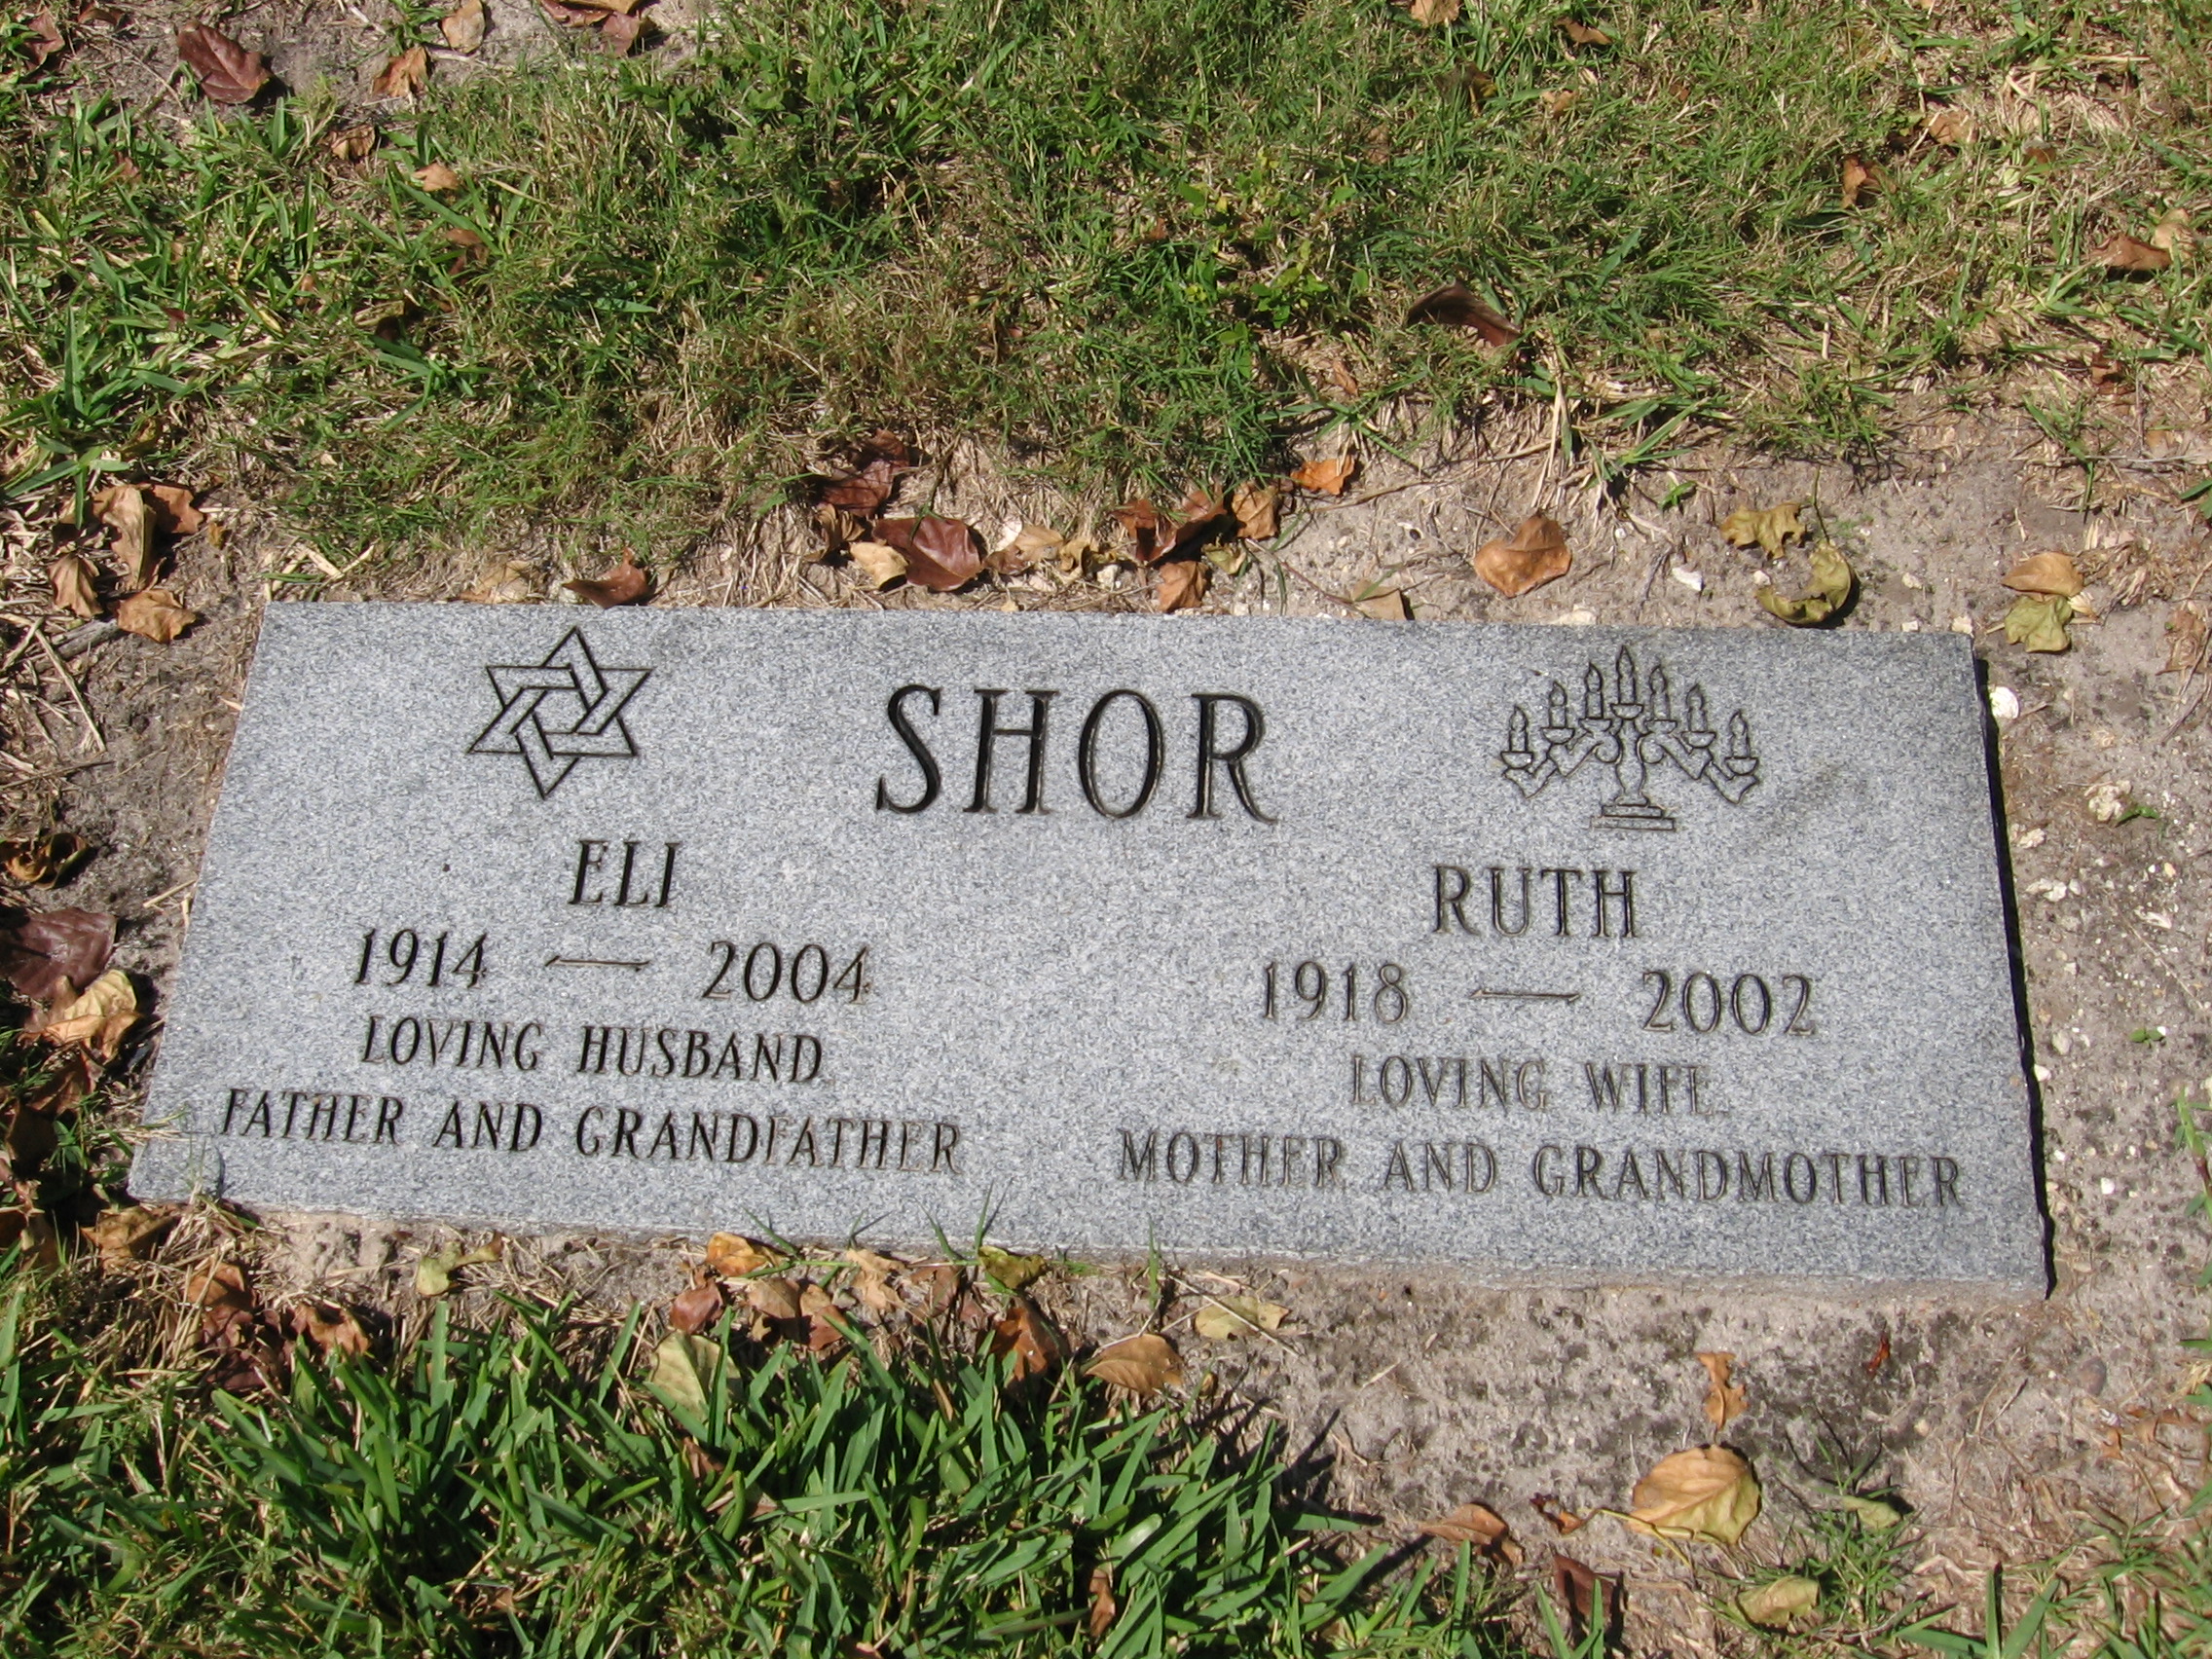 Eli Shor